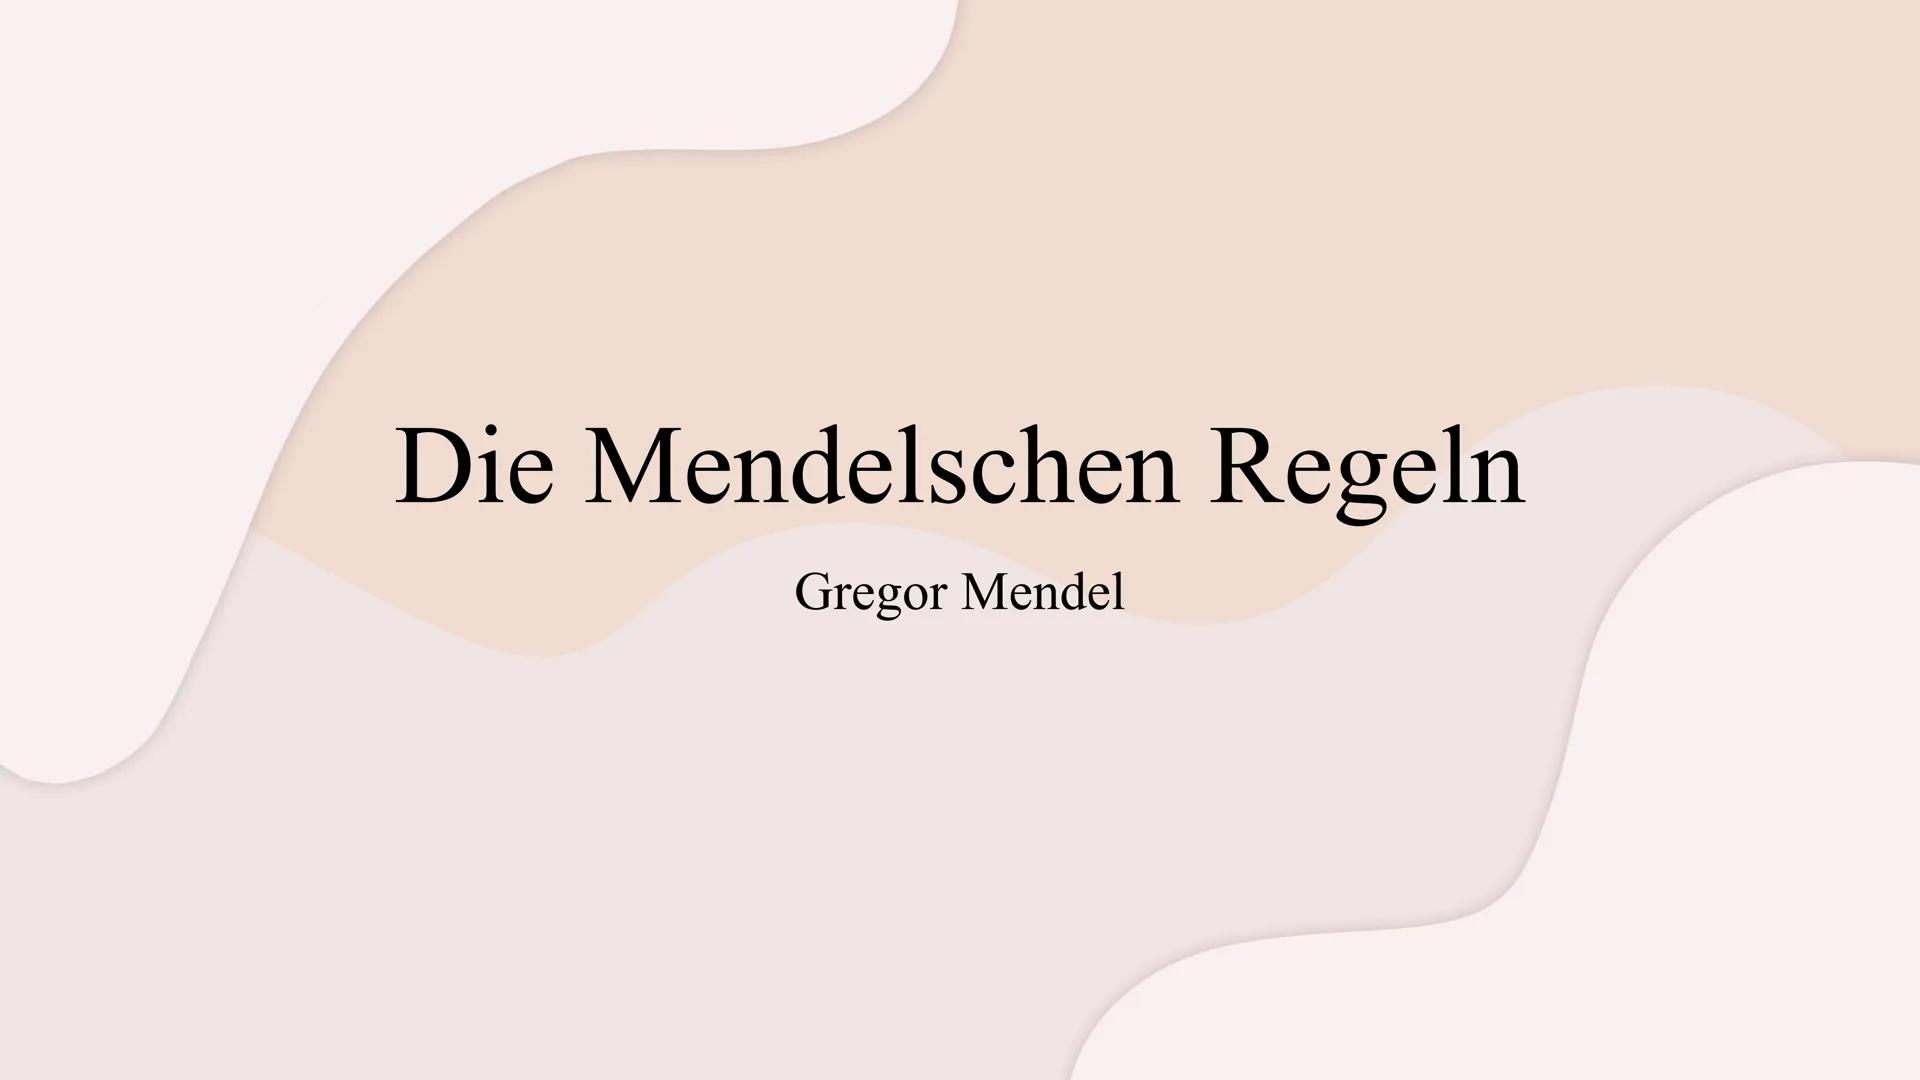 Die Mendelschen Regeln
Gregor Mendel Gliederung
1. Wer war Gregor Mendel?
2. Wie fand Mendel die meldelschen Regeln heraus?
3. Grundlagenwis